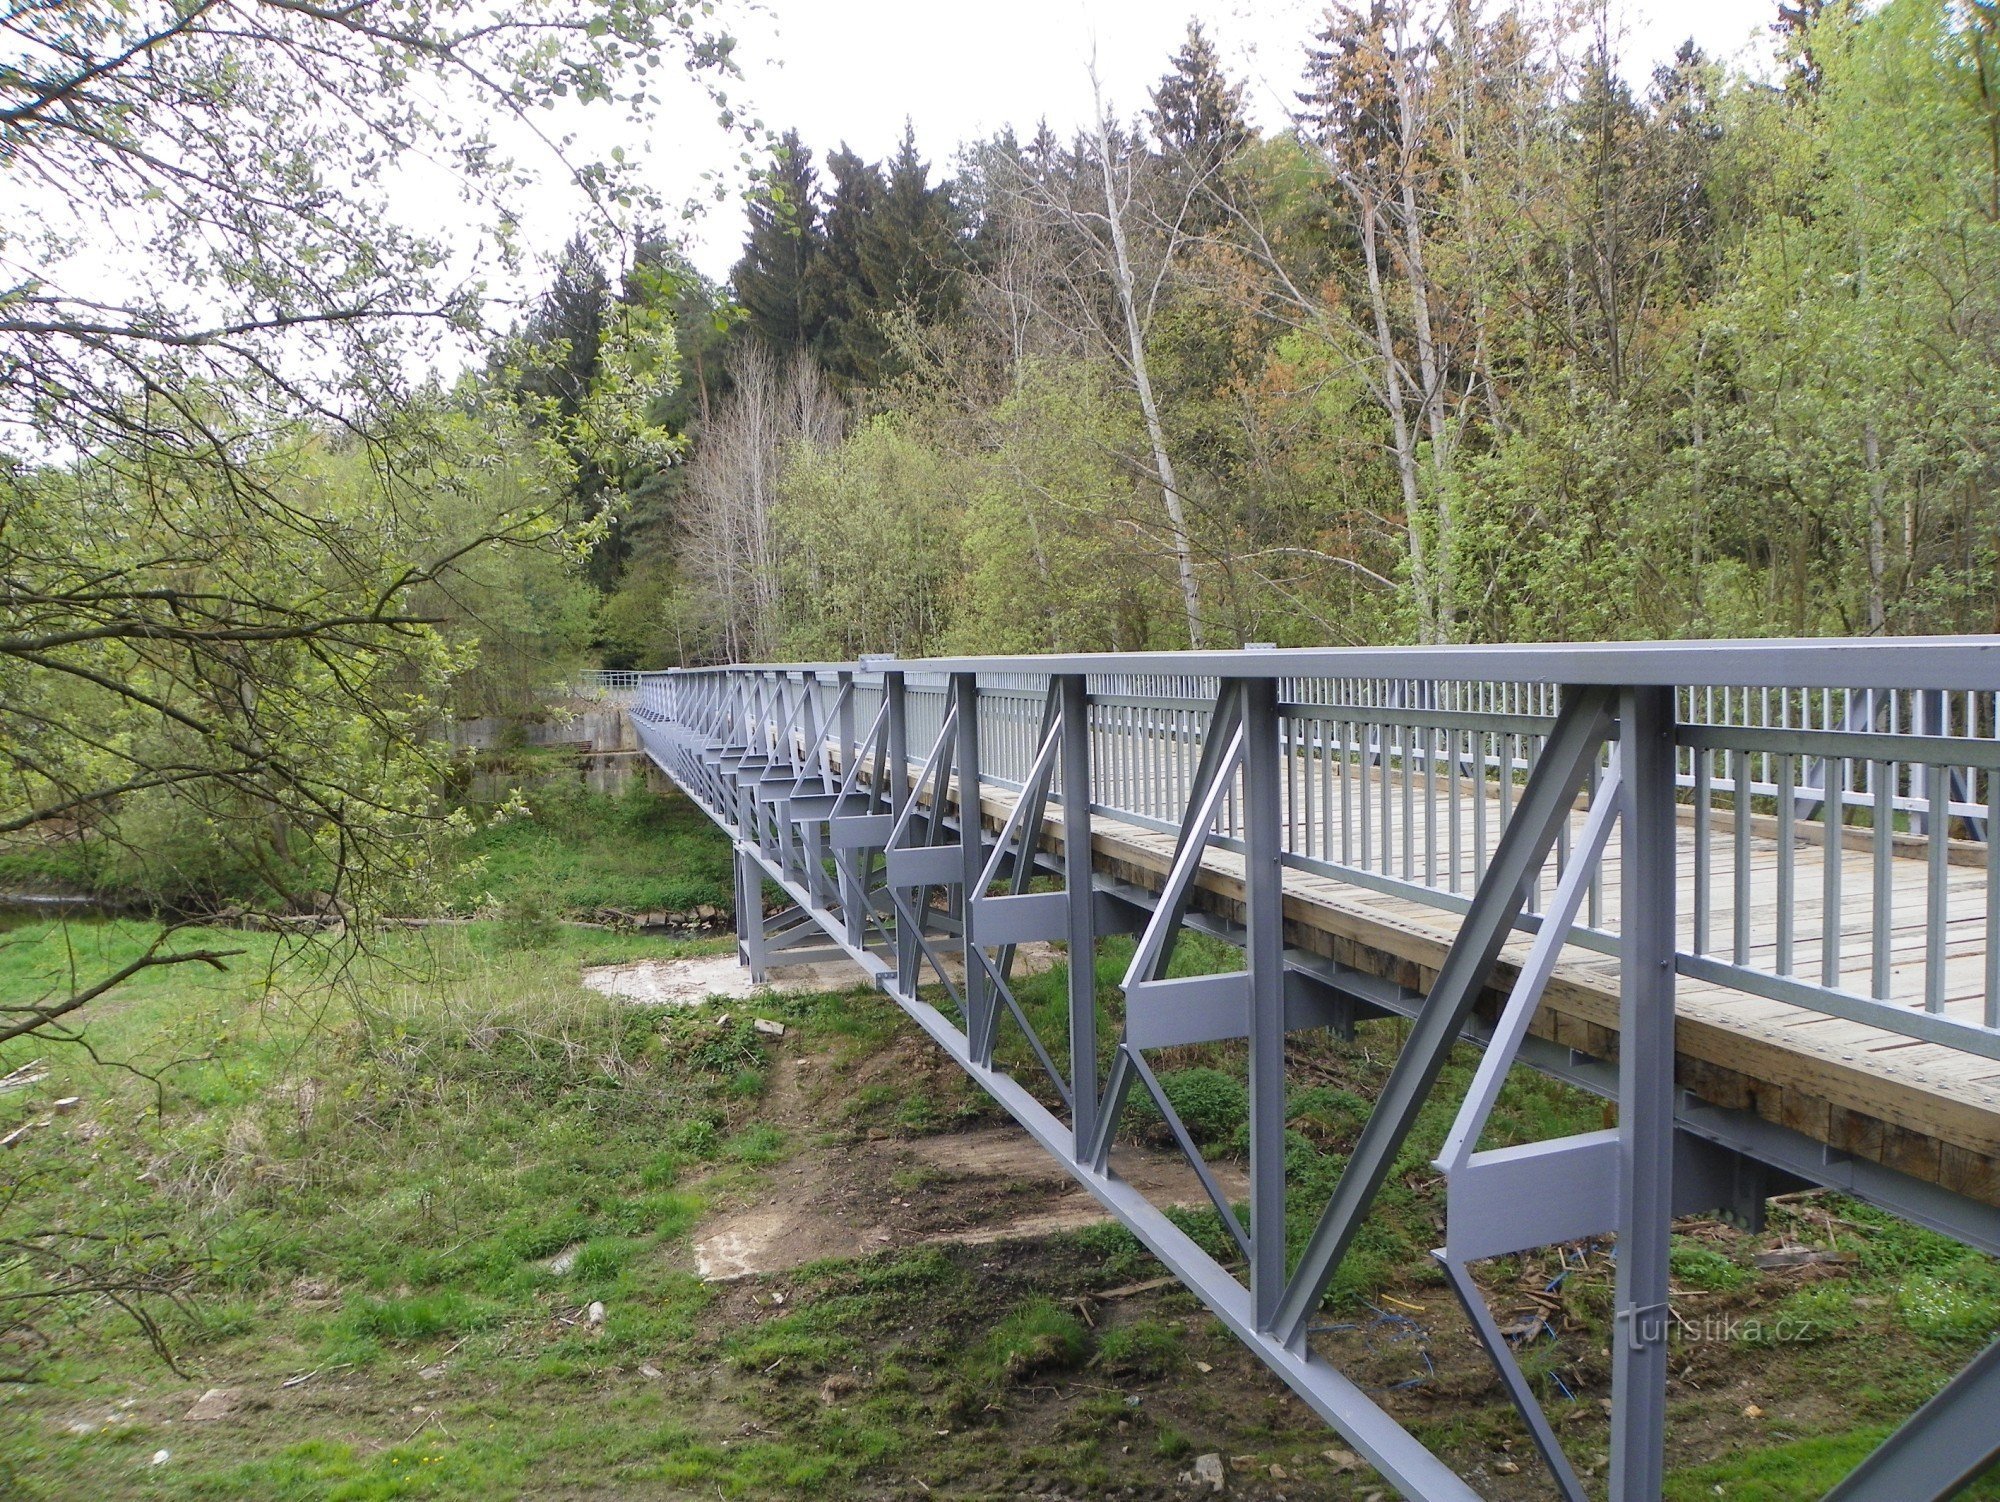 The new bridge over the Sázava